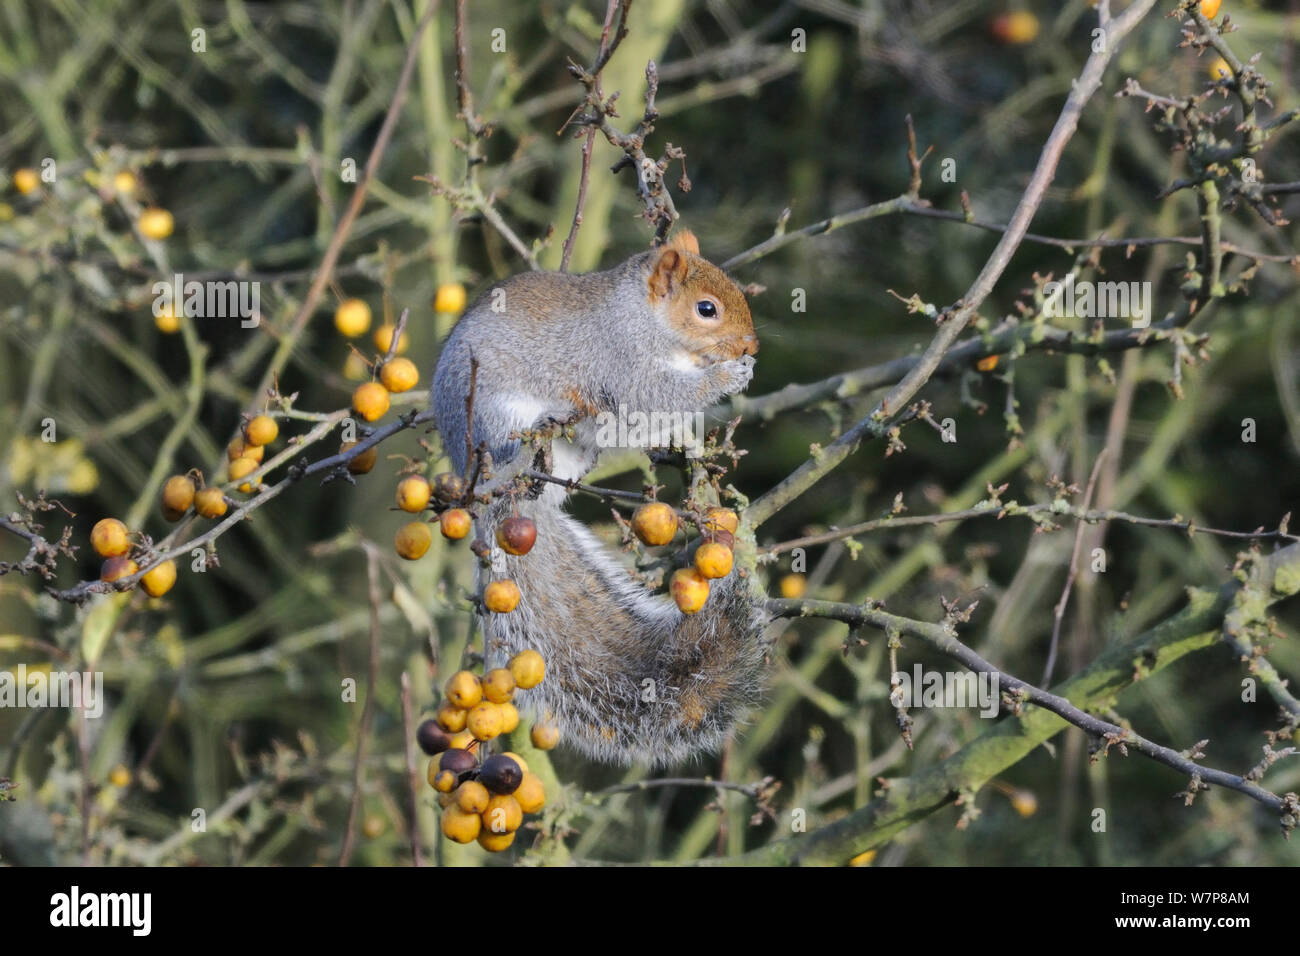 L'écureuil gris (Sciurus carolinensis) manger un pommier (Malus sp.) sur une branche chargée de fruits, Hertfordshire, Royaume-Uni, novembre. Banque D'Images